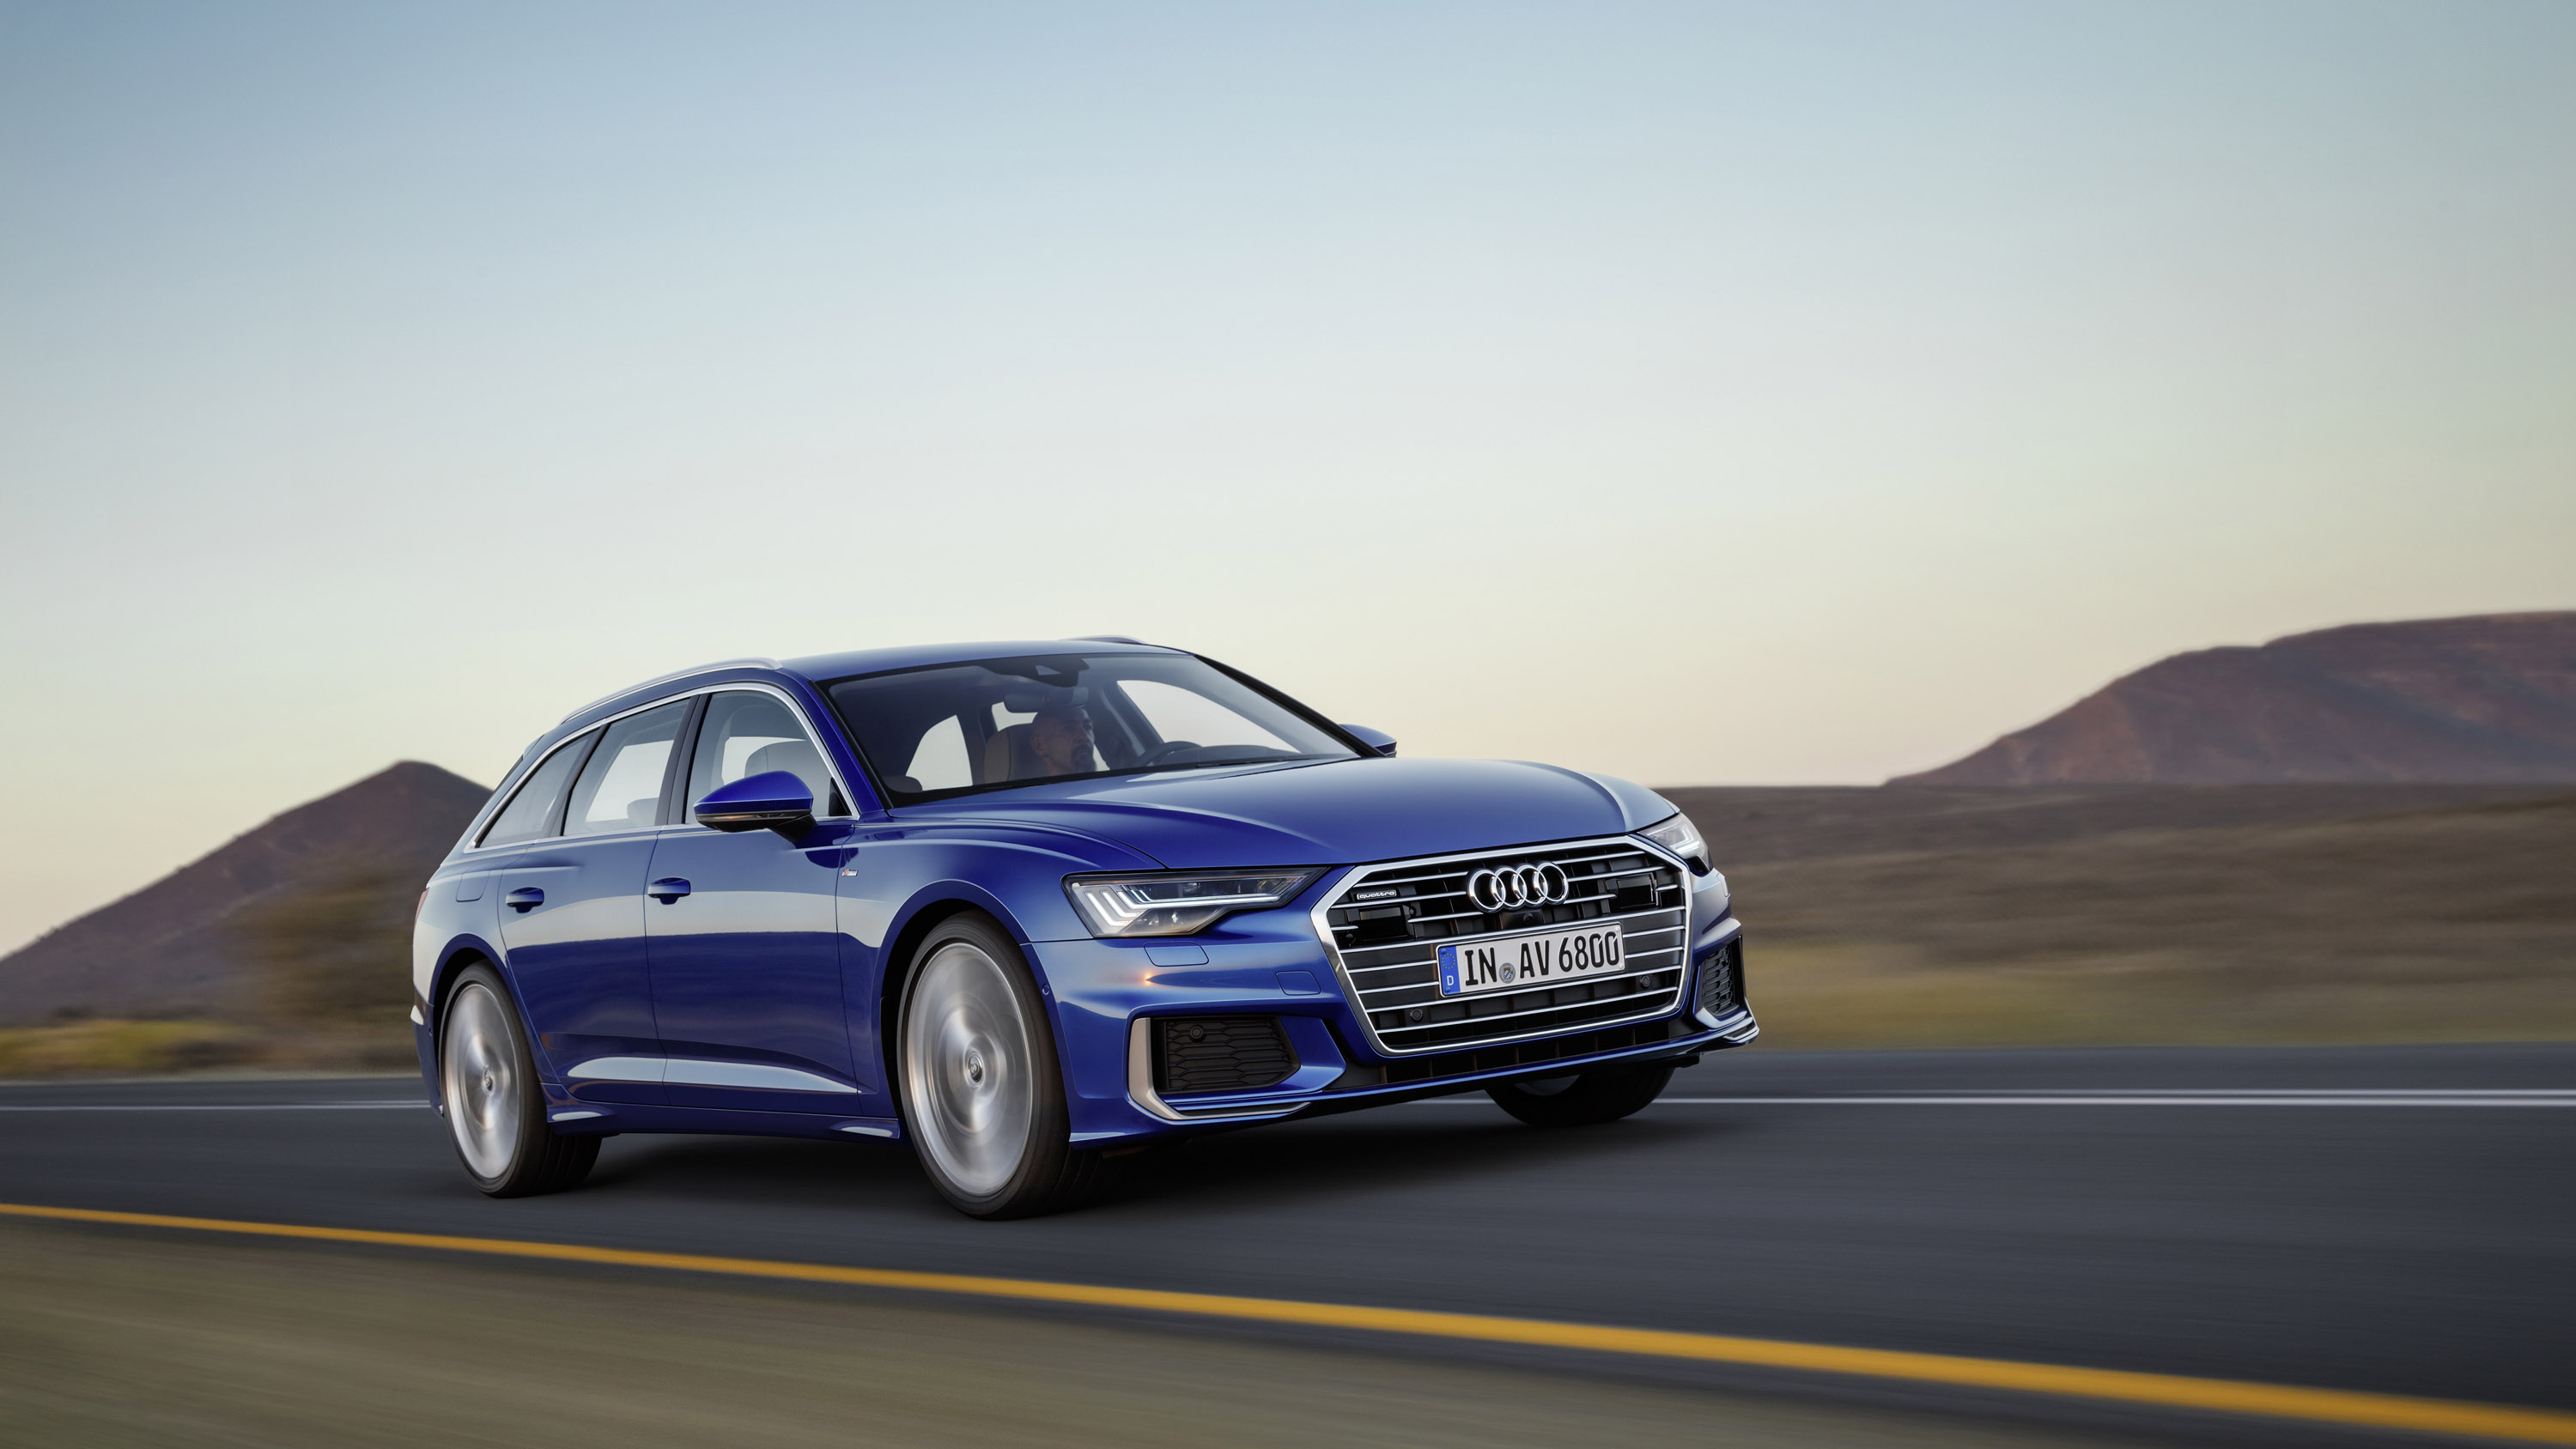 Avant представляет собой приверженность Audi к элегантности и технологическому прогрессу.